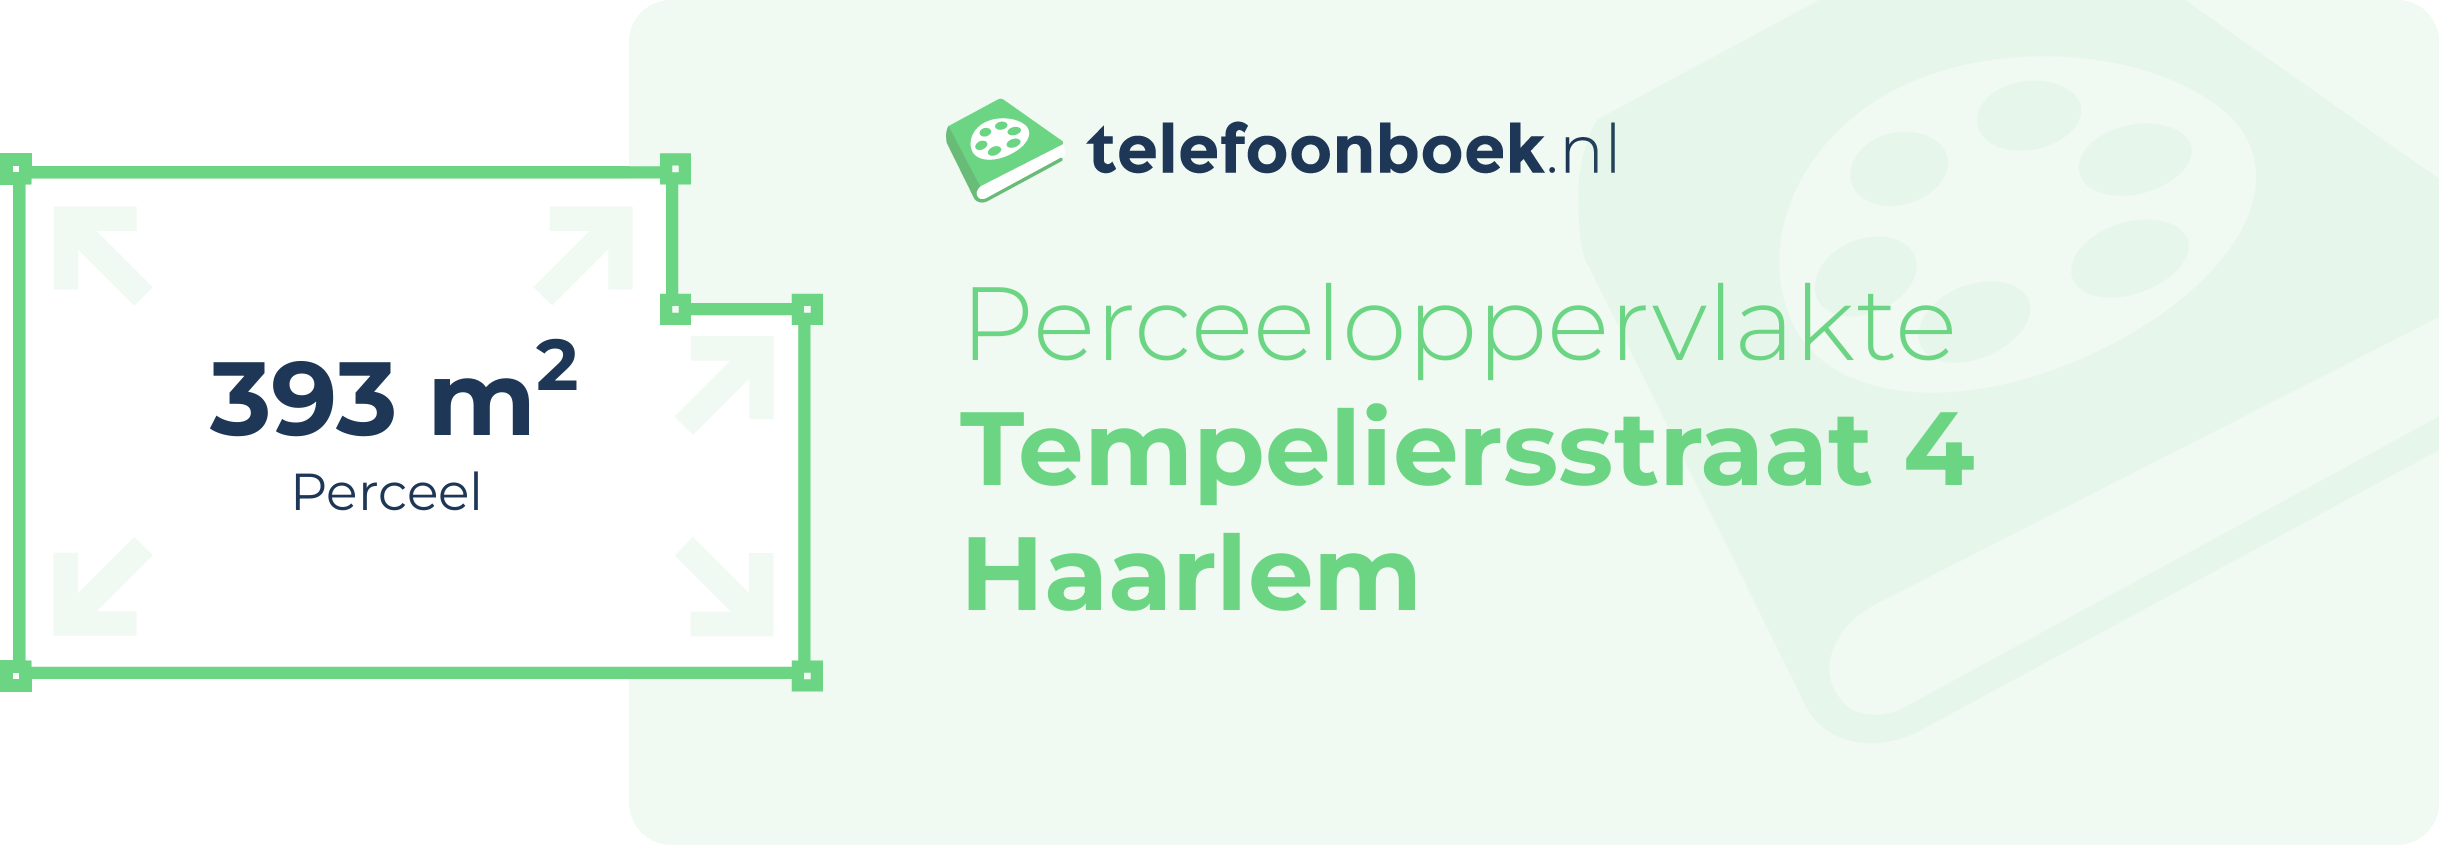 Perceeloppervlakte Tempeliersstraat 4 Haarlem